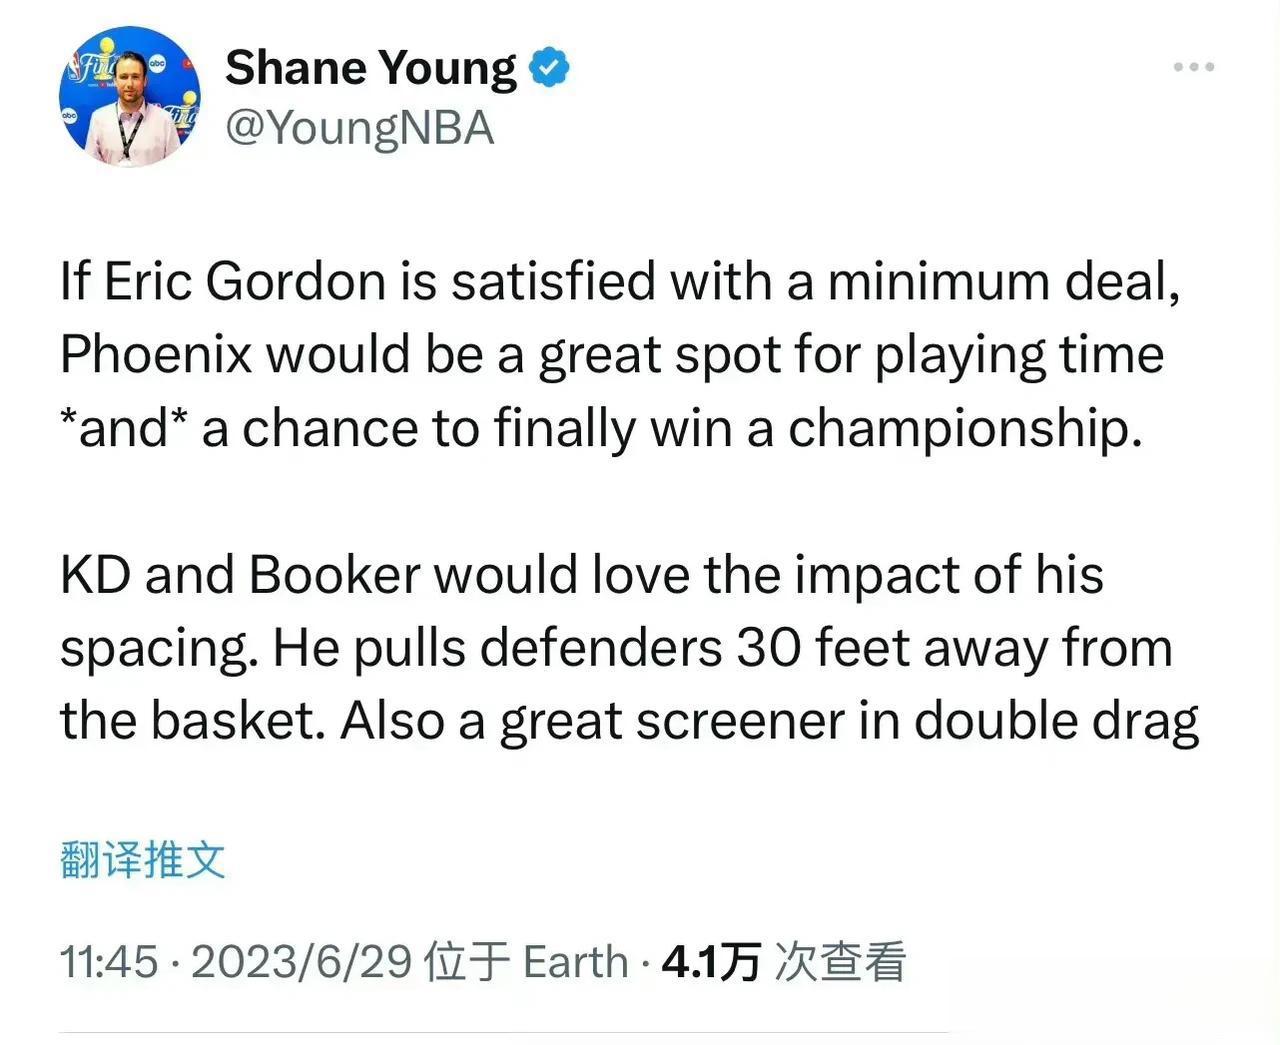 美媒认为如果戈登愿意降薪，太阳队会是他的好去处

Shane Young：如果戈(1)